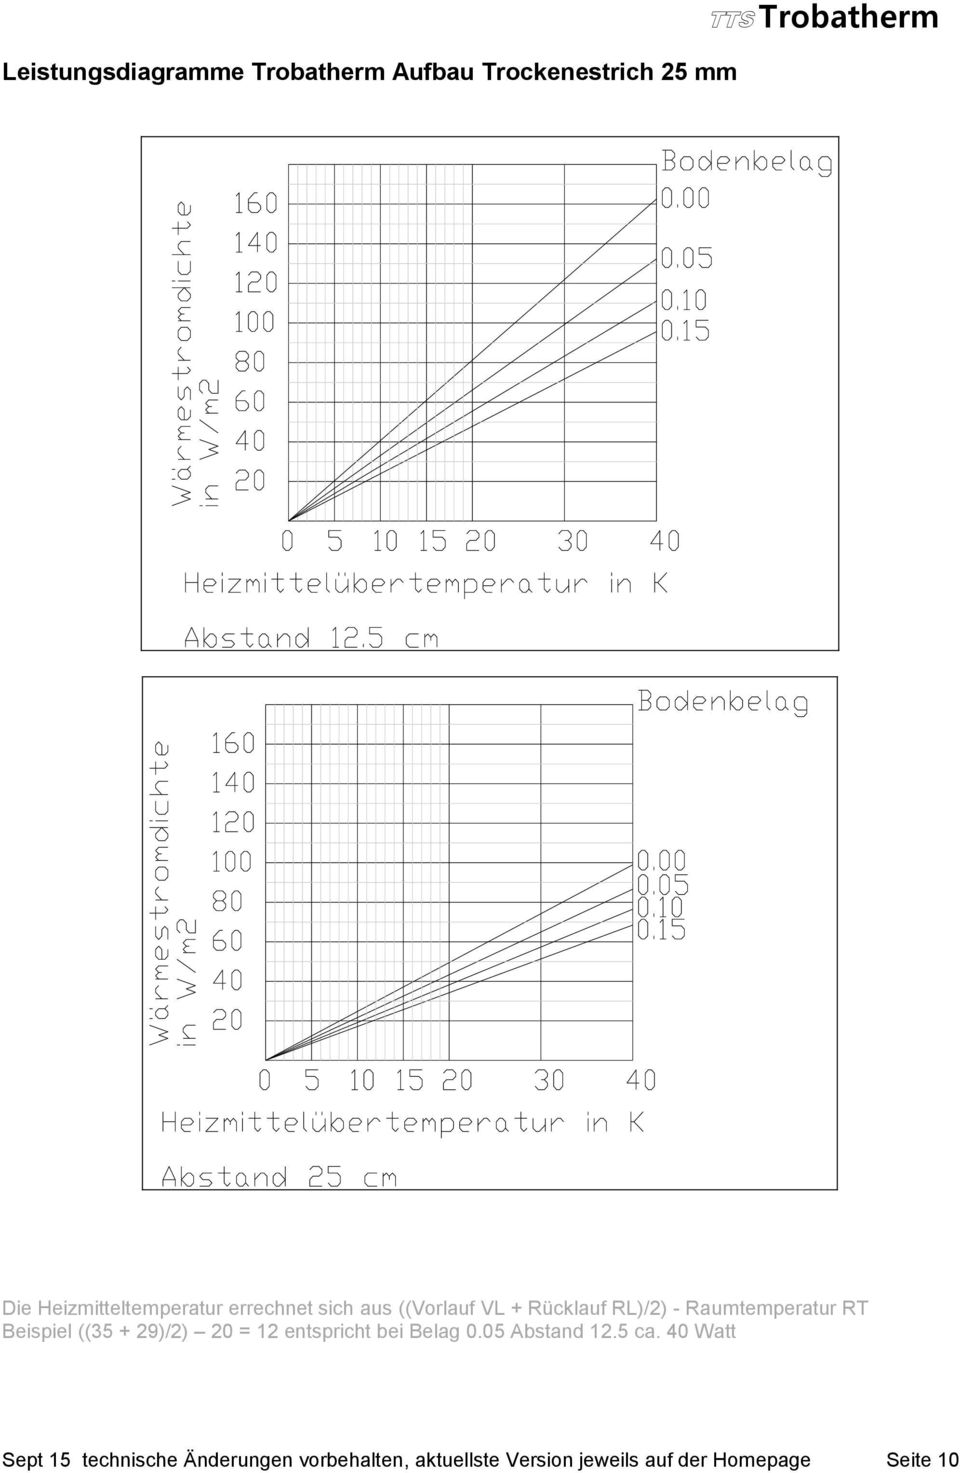 Raumtemperatur RT Beispiel ((35 + 29)/2) 20 = 12 entspricht bei Belag 0.05 Abstand 12.